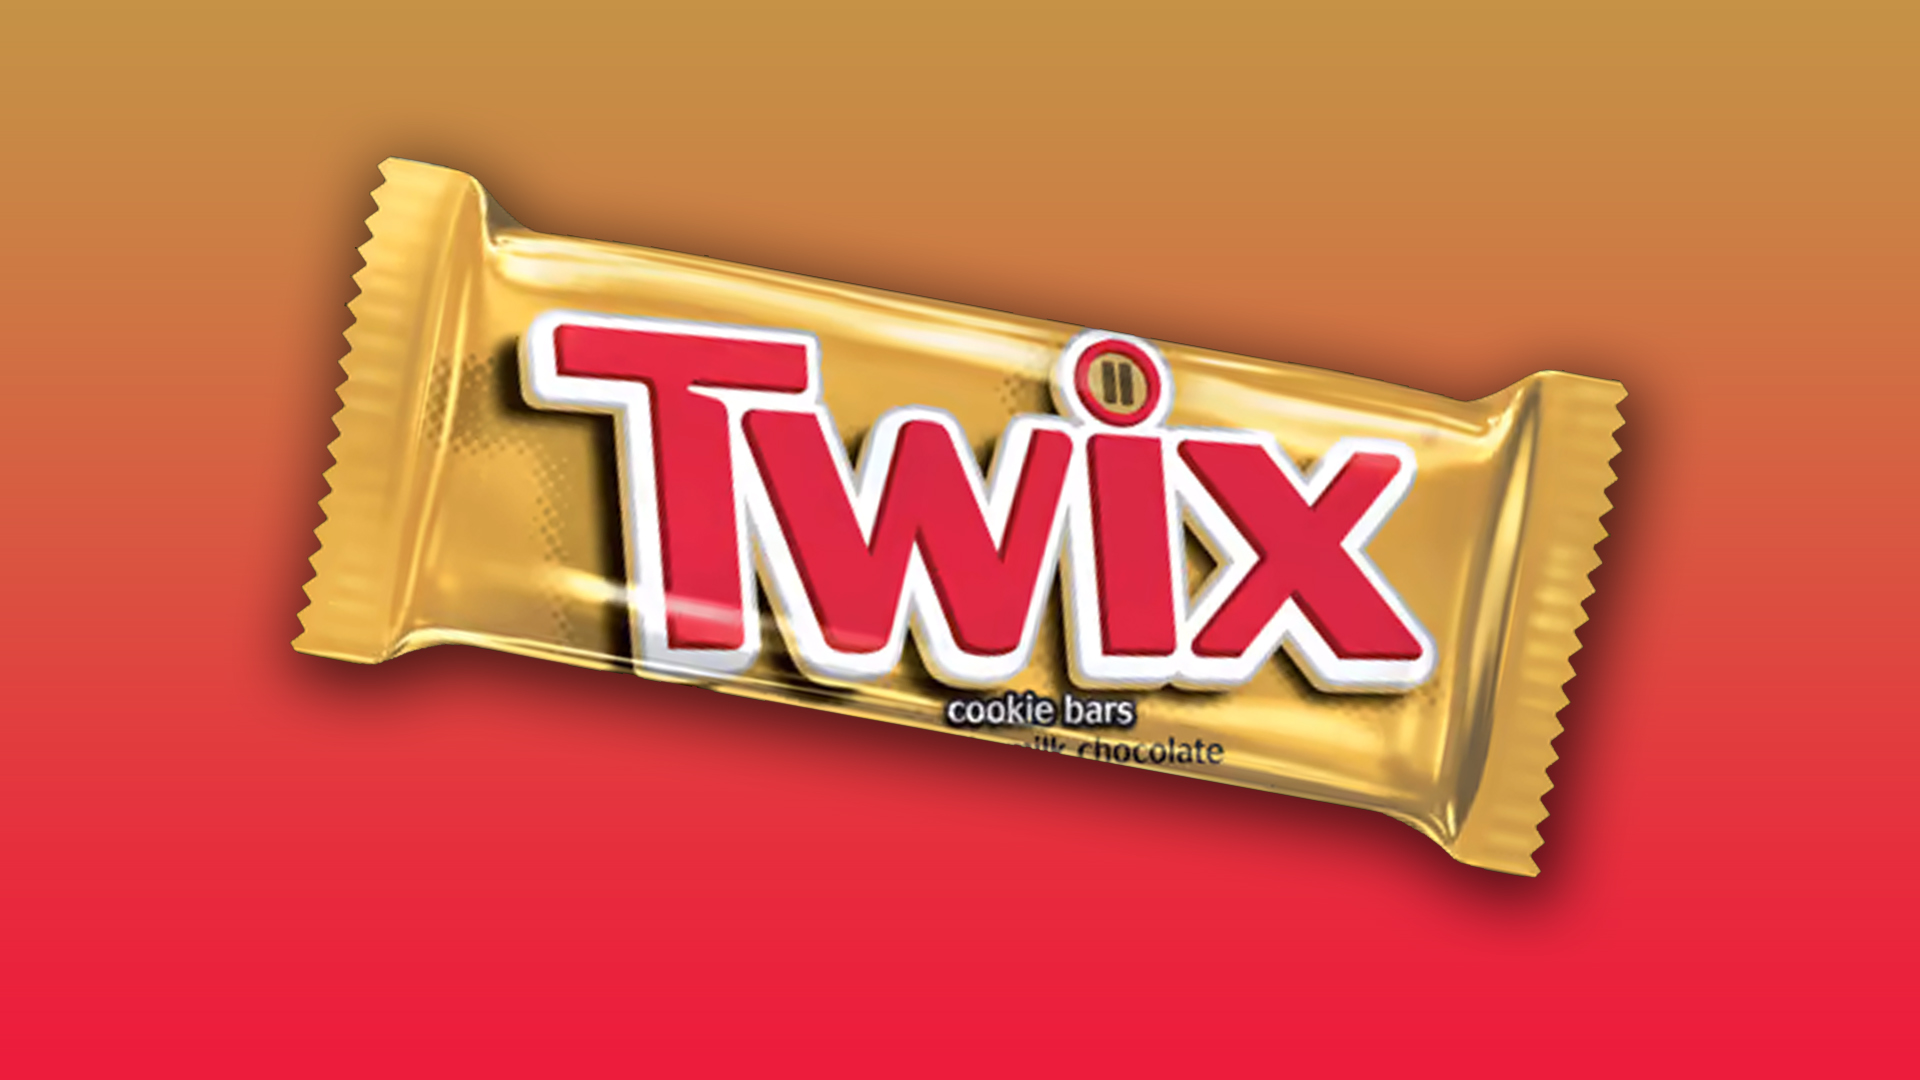 Do you know the Twix logo secret? | Creative Bloq